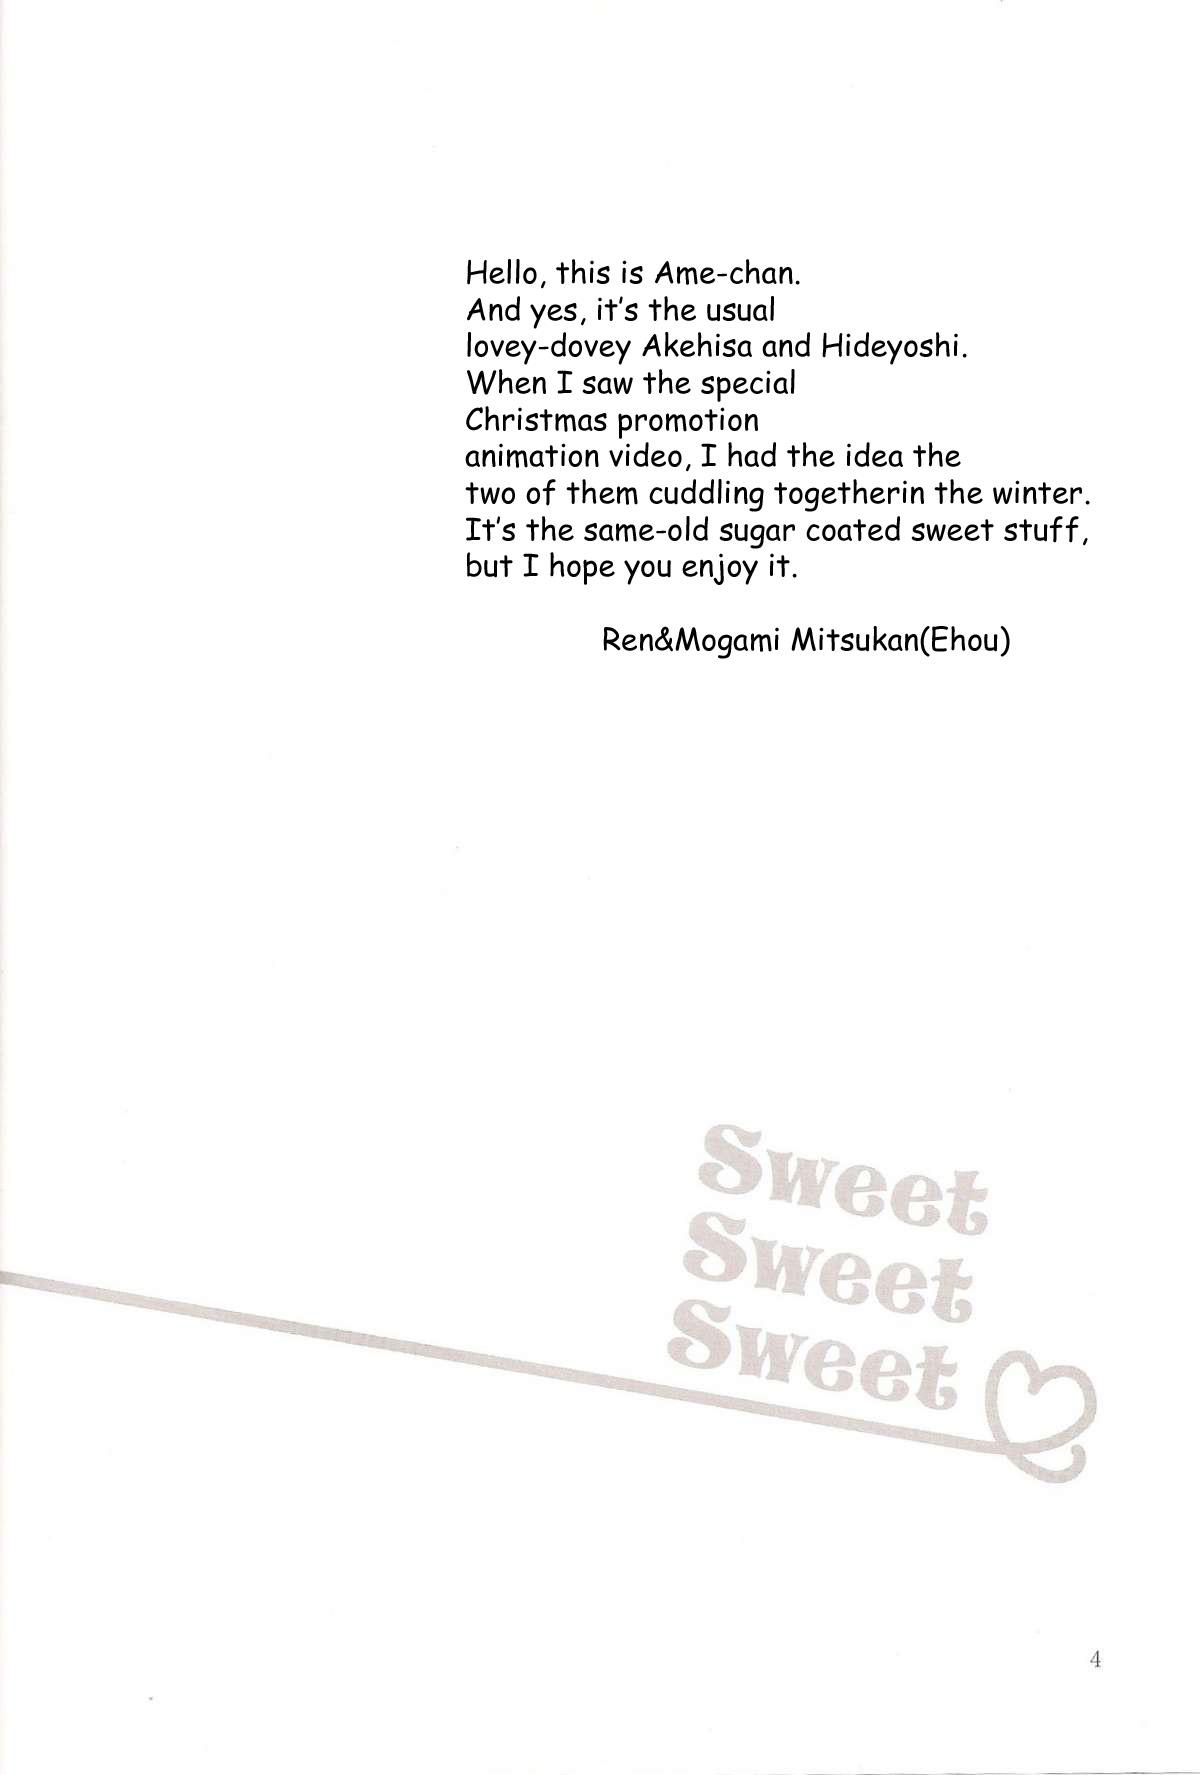 Sweet Sweet Sweet - BakaEro 5 2